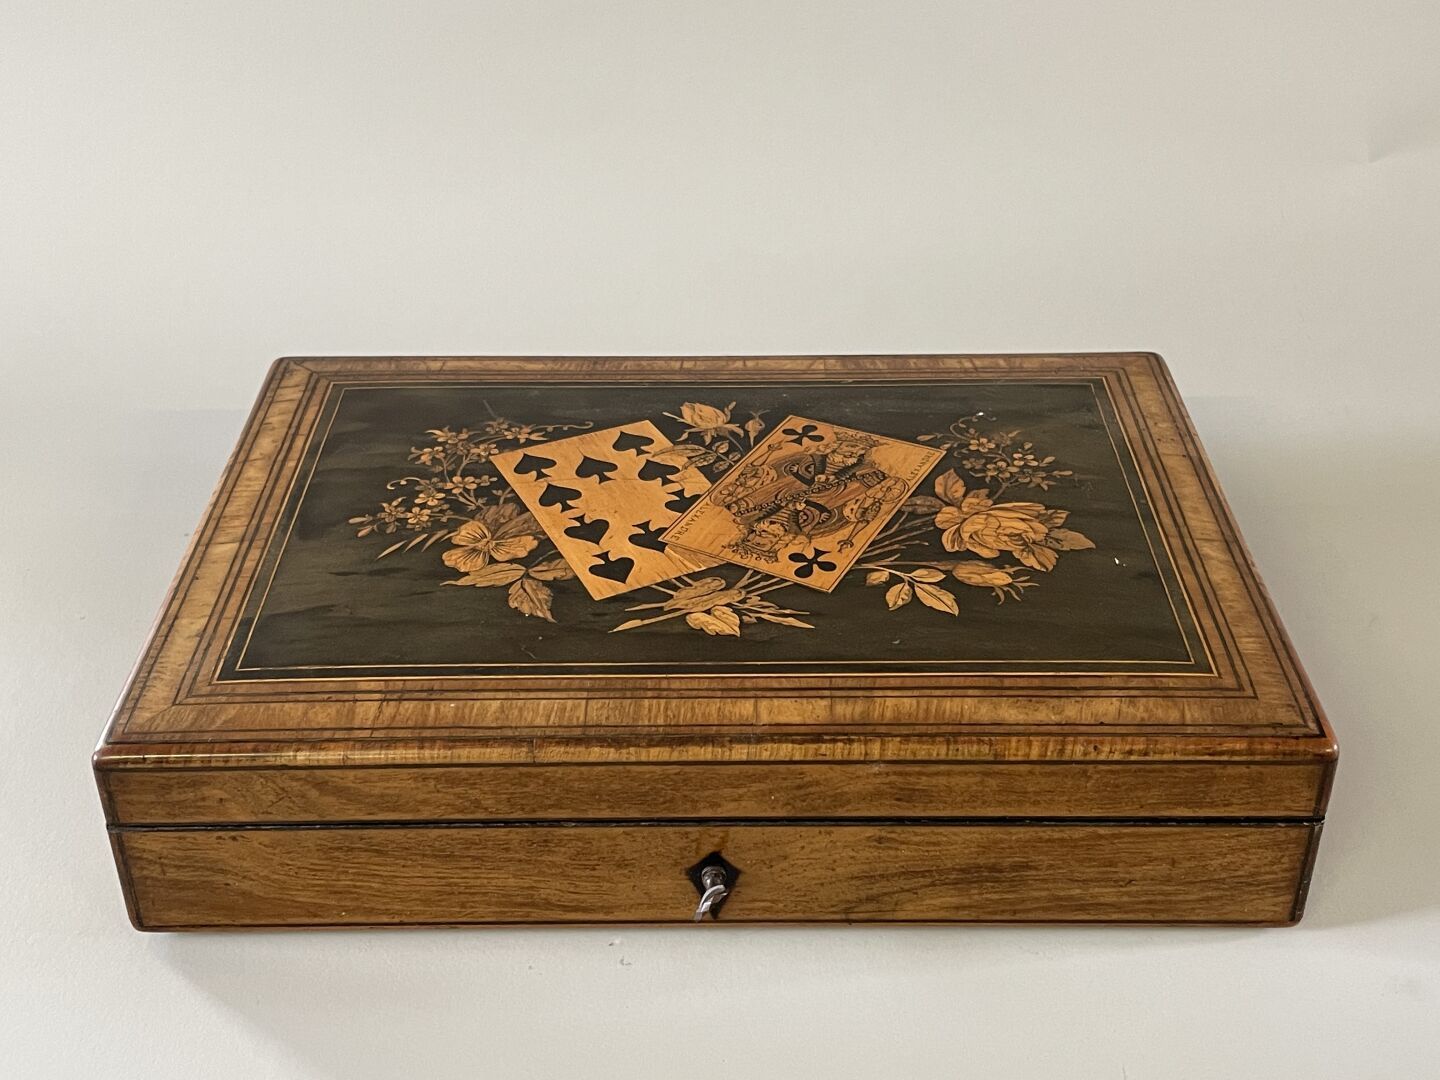 Null 游戏盒，盖子上镶嵌着扑克牌和花，内部有隔间，装有纸牌游戏和骰子。

19世纪晚期。

 7 x 31 x 21 厘米